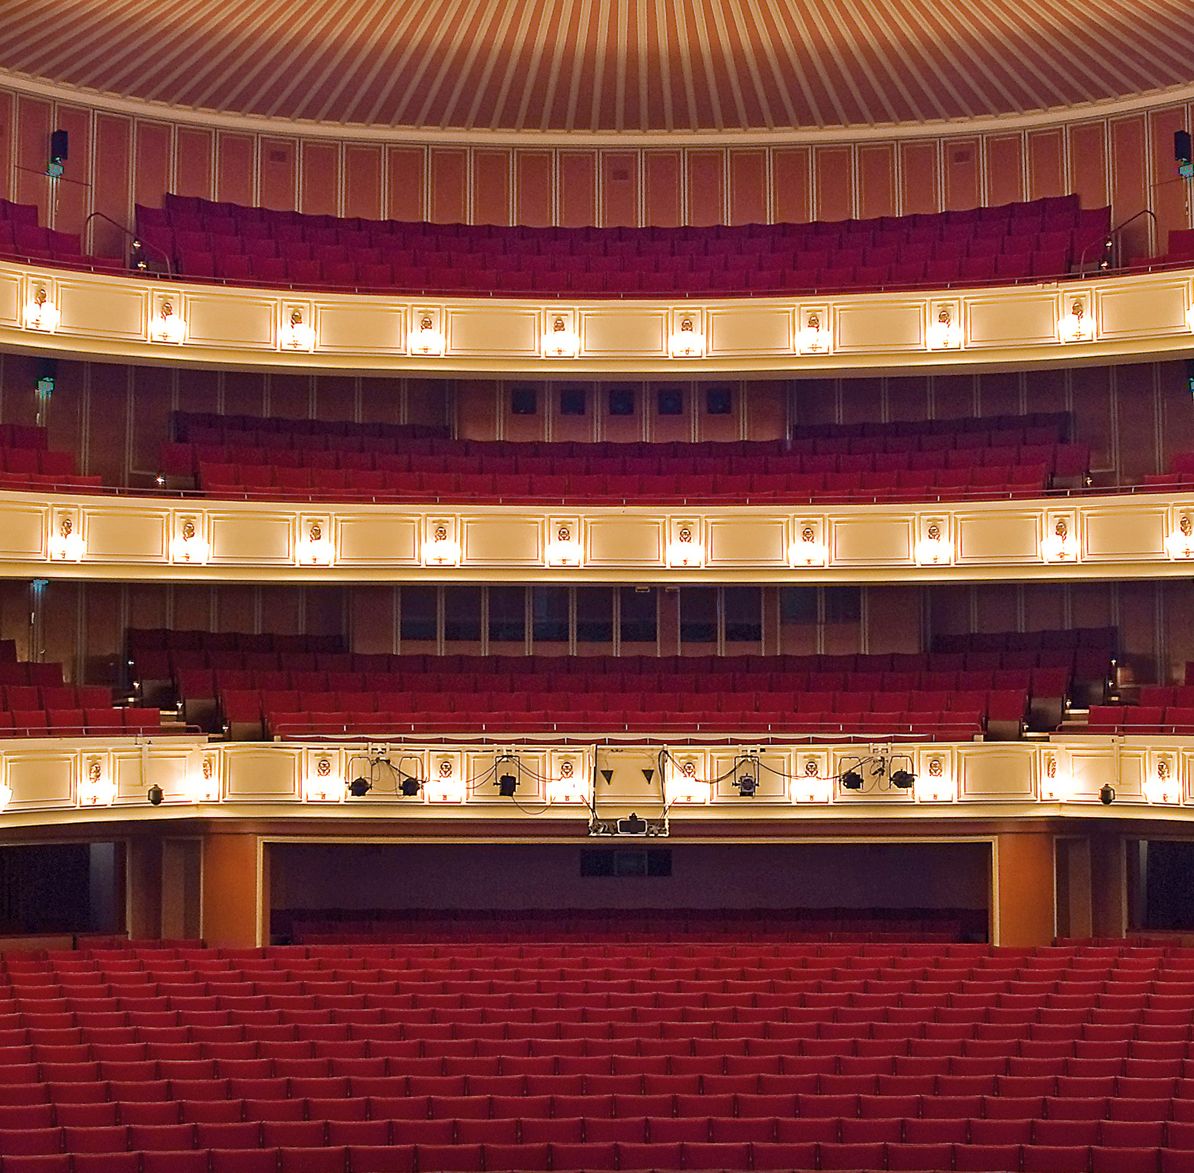 Rotonda trifft OPERNHAUS DÜSSELDORF: Oper backstage – ein Blick hinter die Kulissen